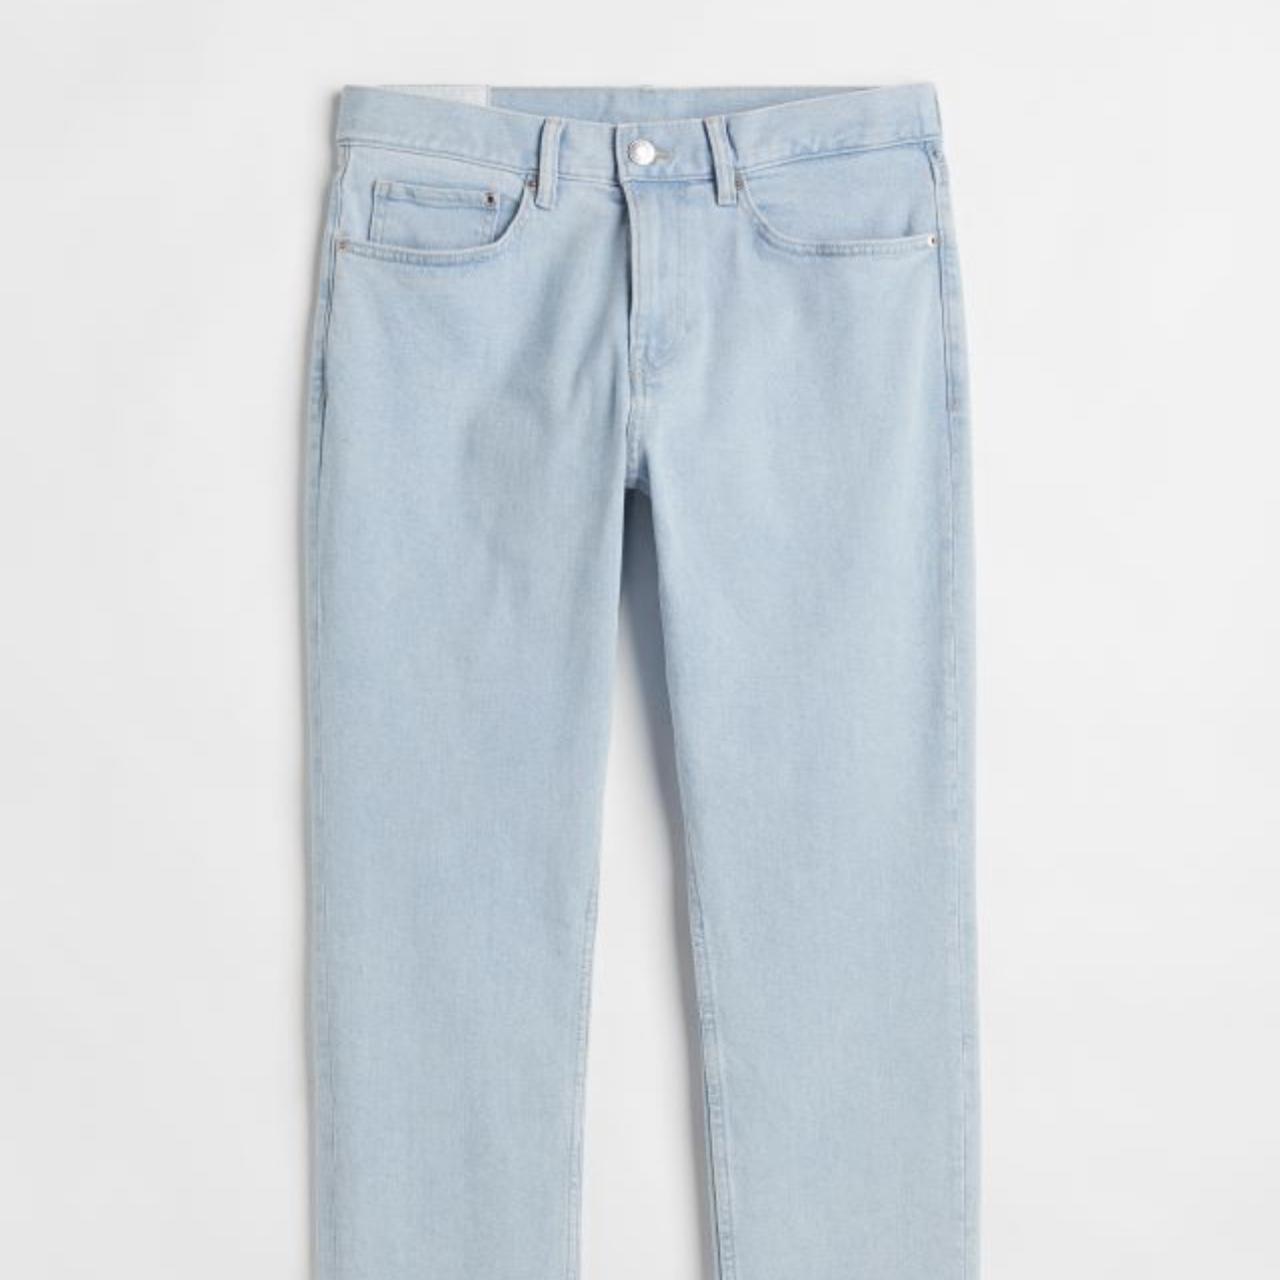 H&M men’s light blue wash denim slim fit jeans,... - Depop